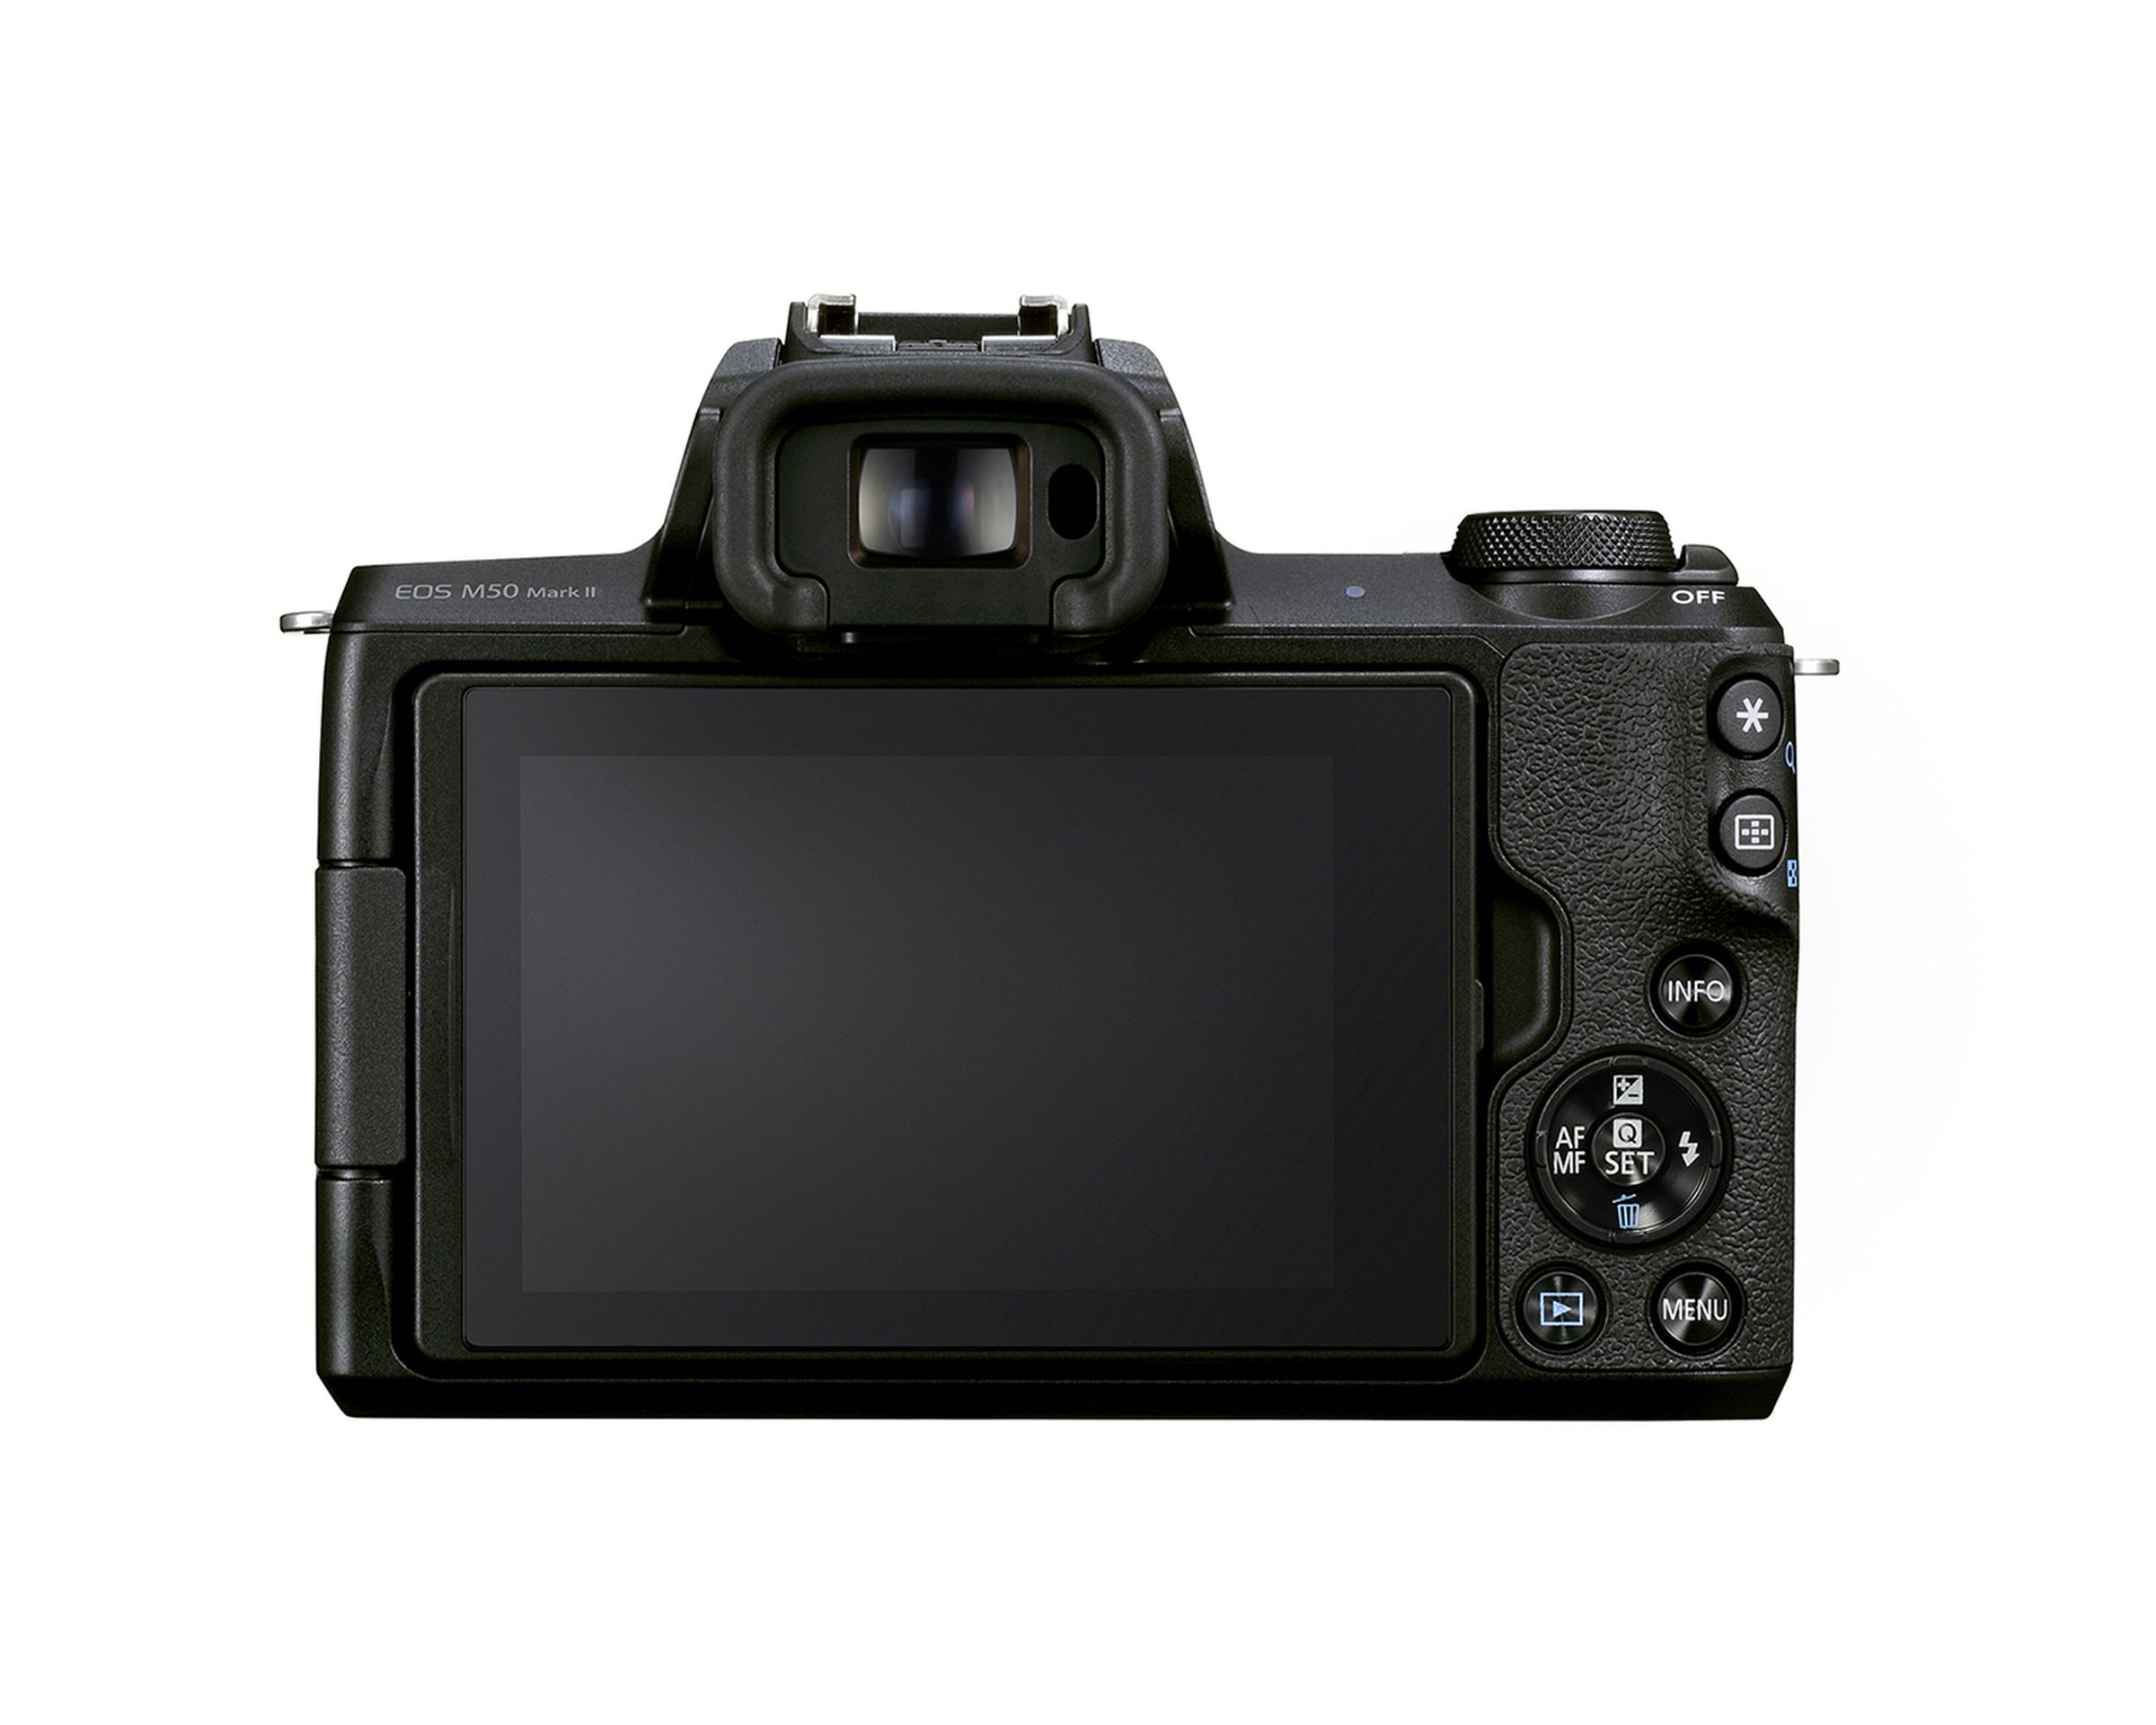 Canon’s EOS M50 Mark II camera